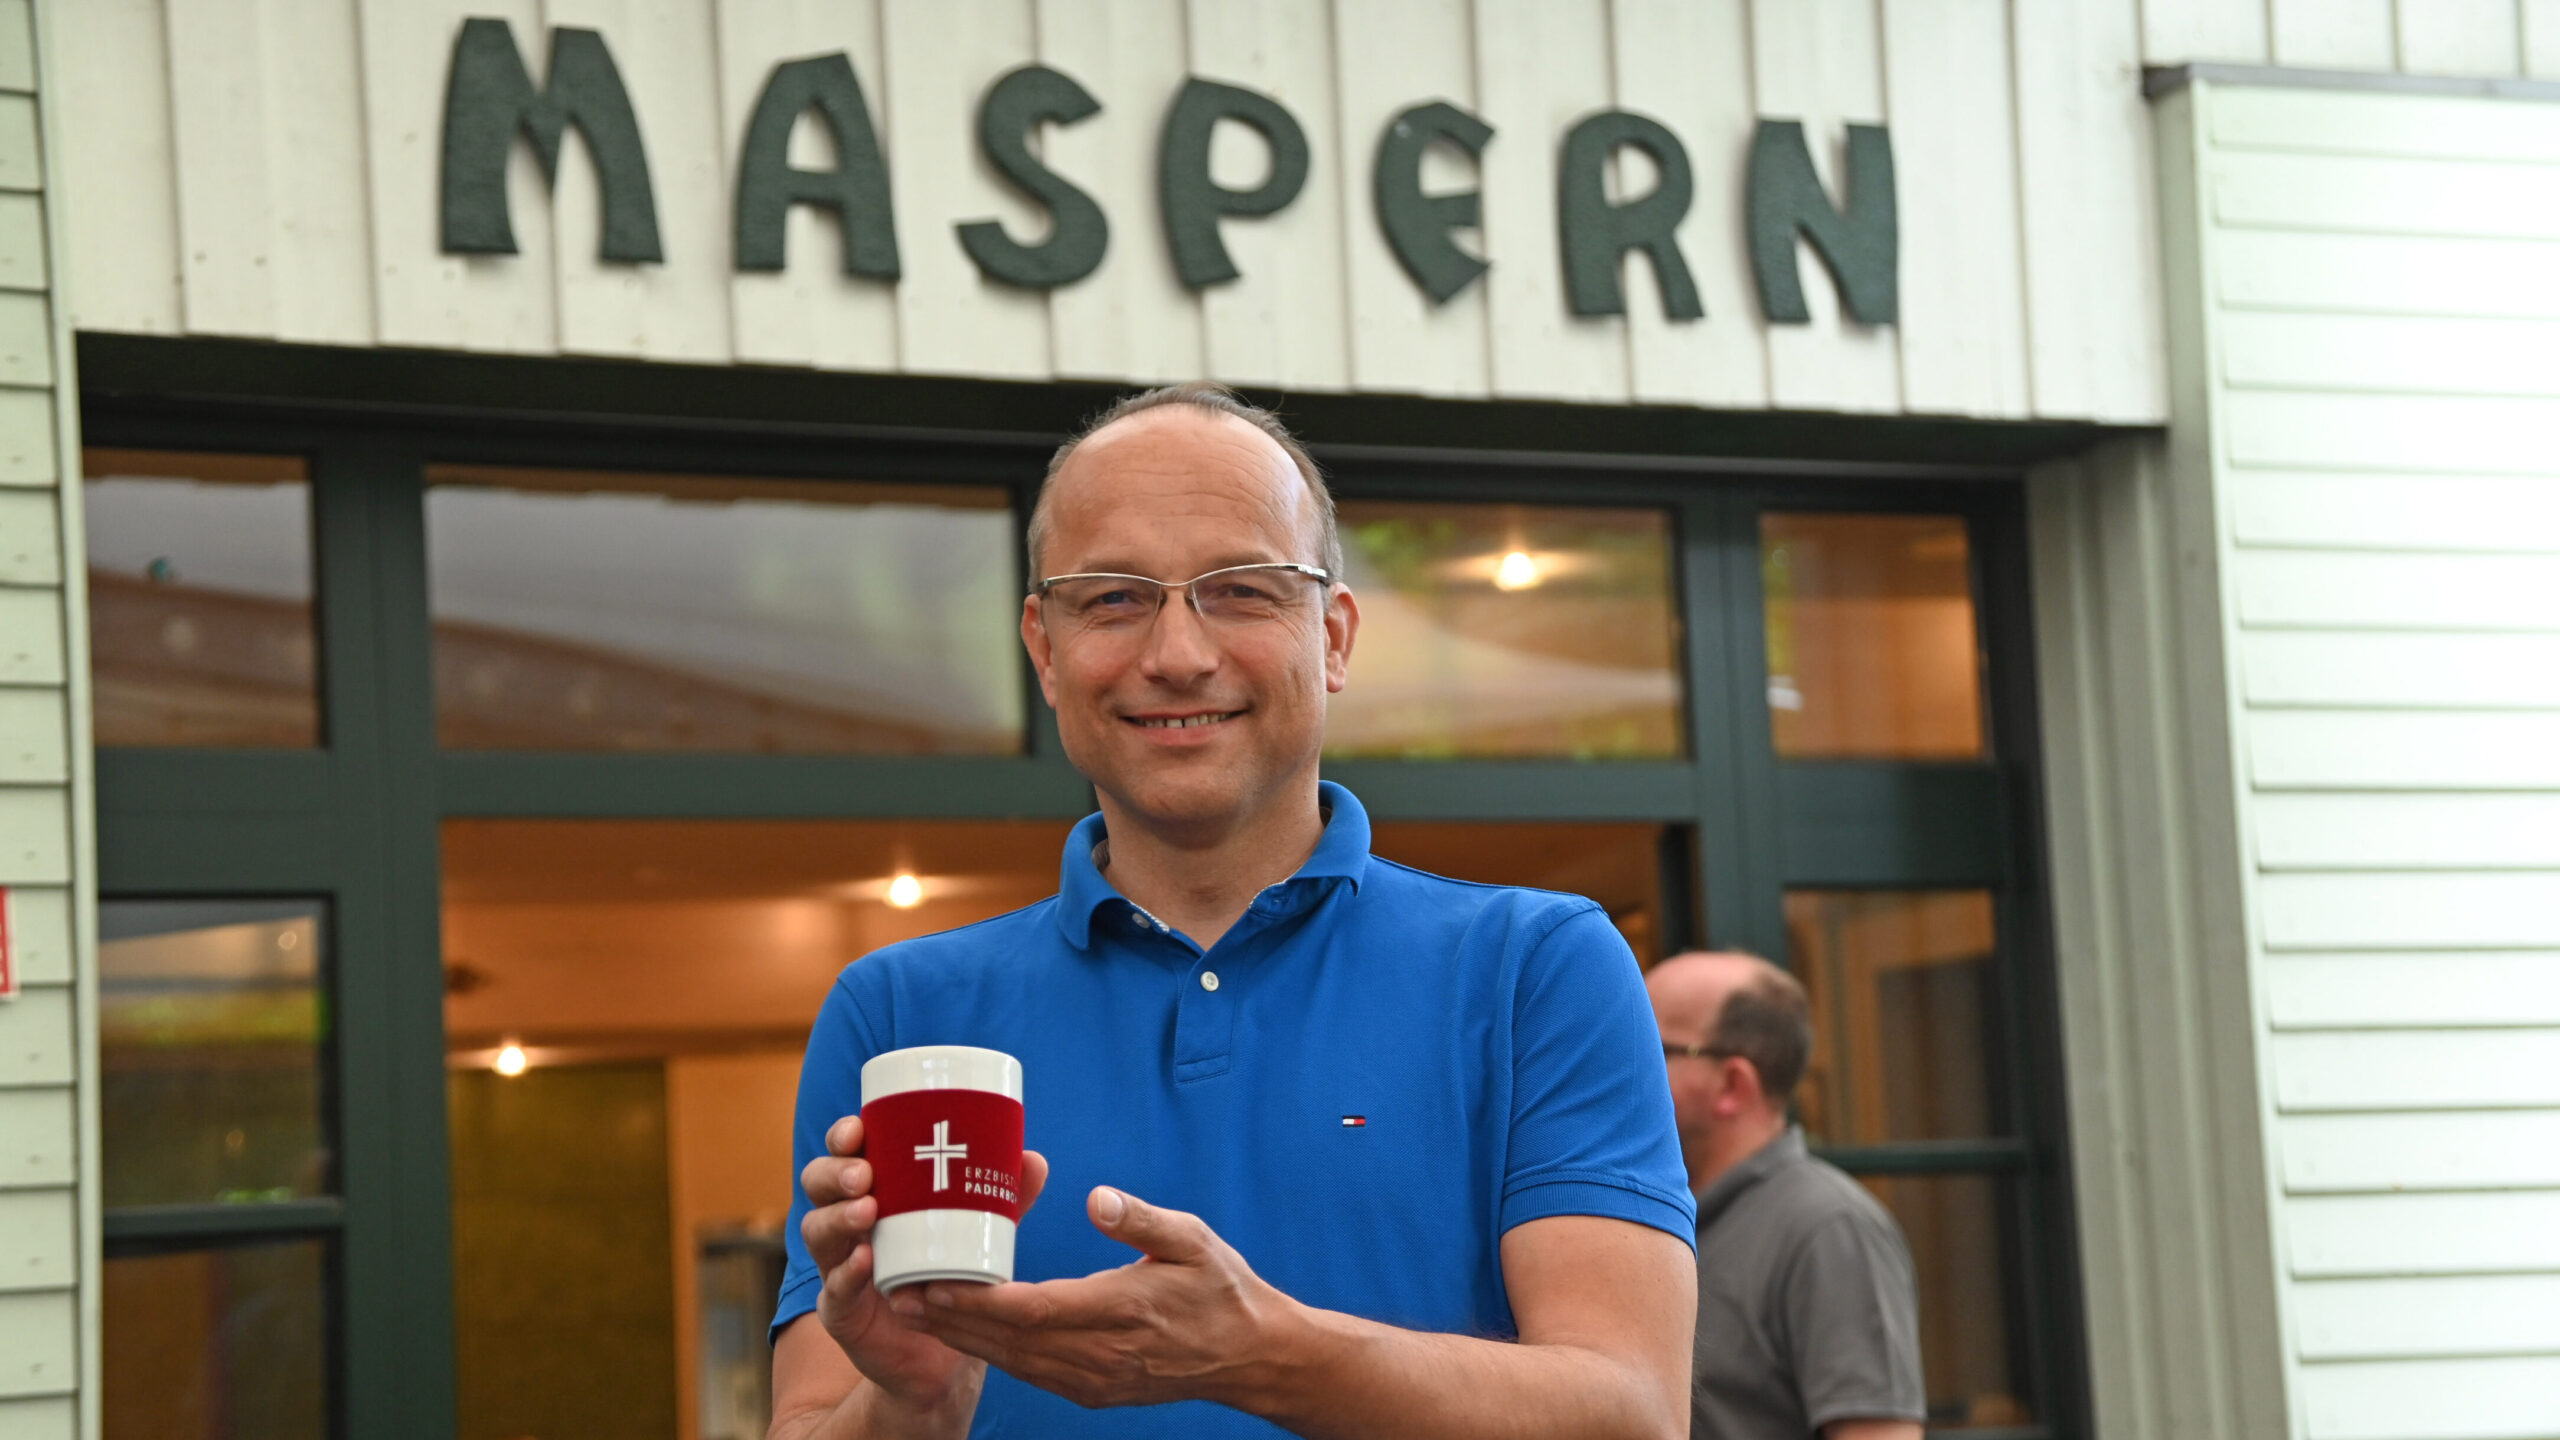 Hubert Salmen steht vor einem Gebäude und hält einen Kaffeebecher in der Hand.